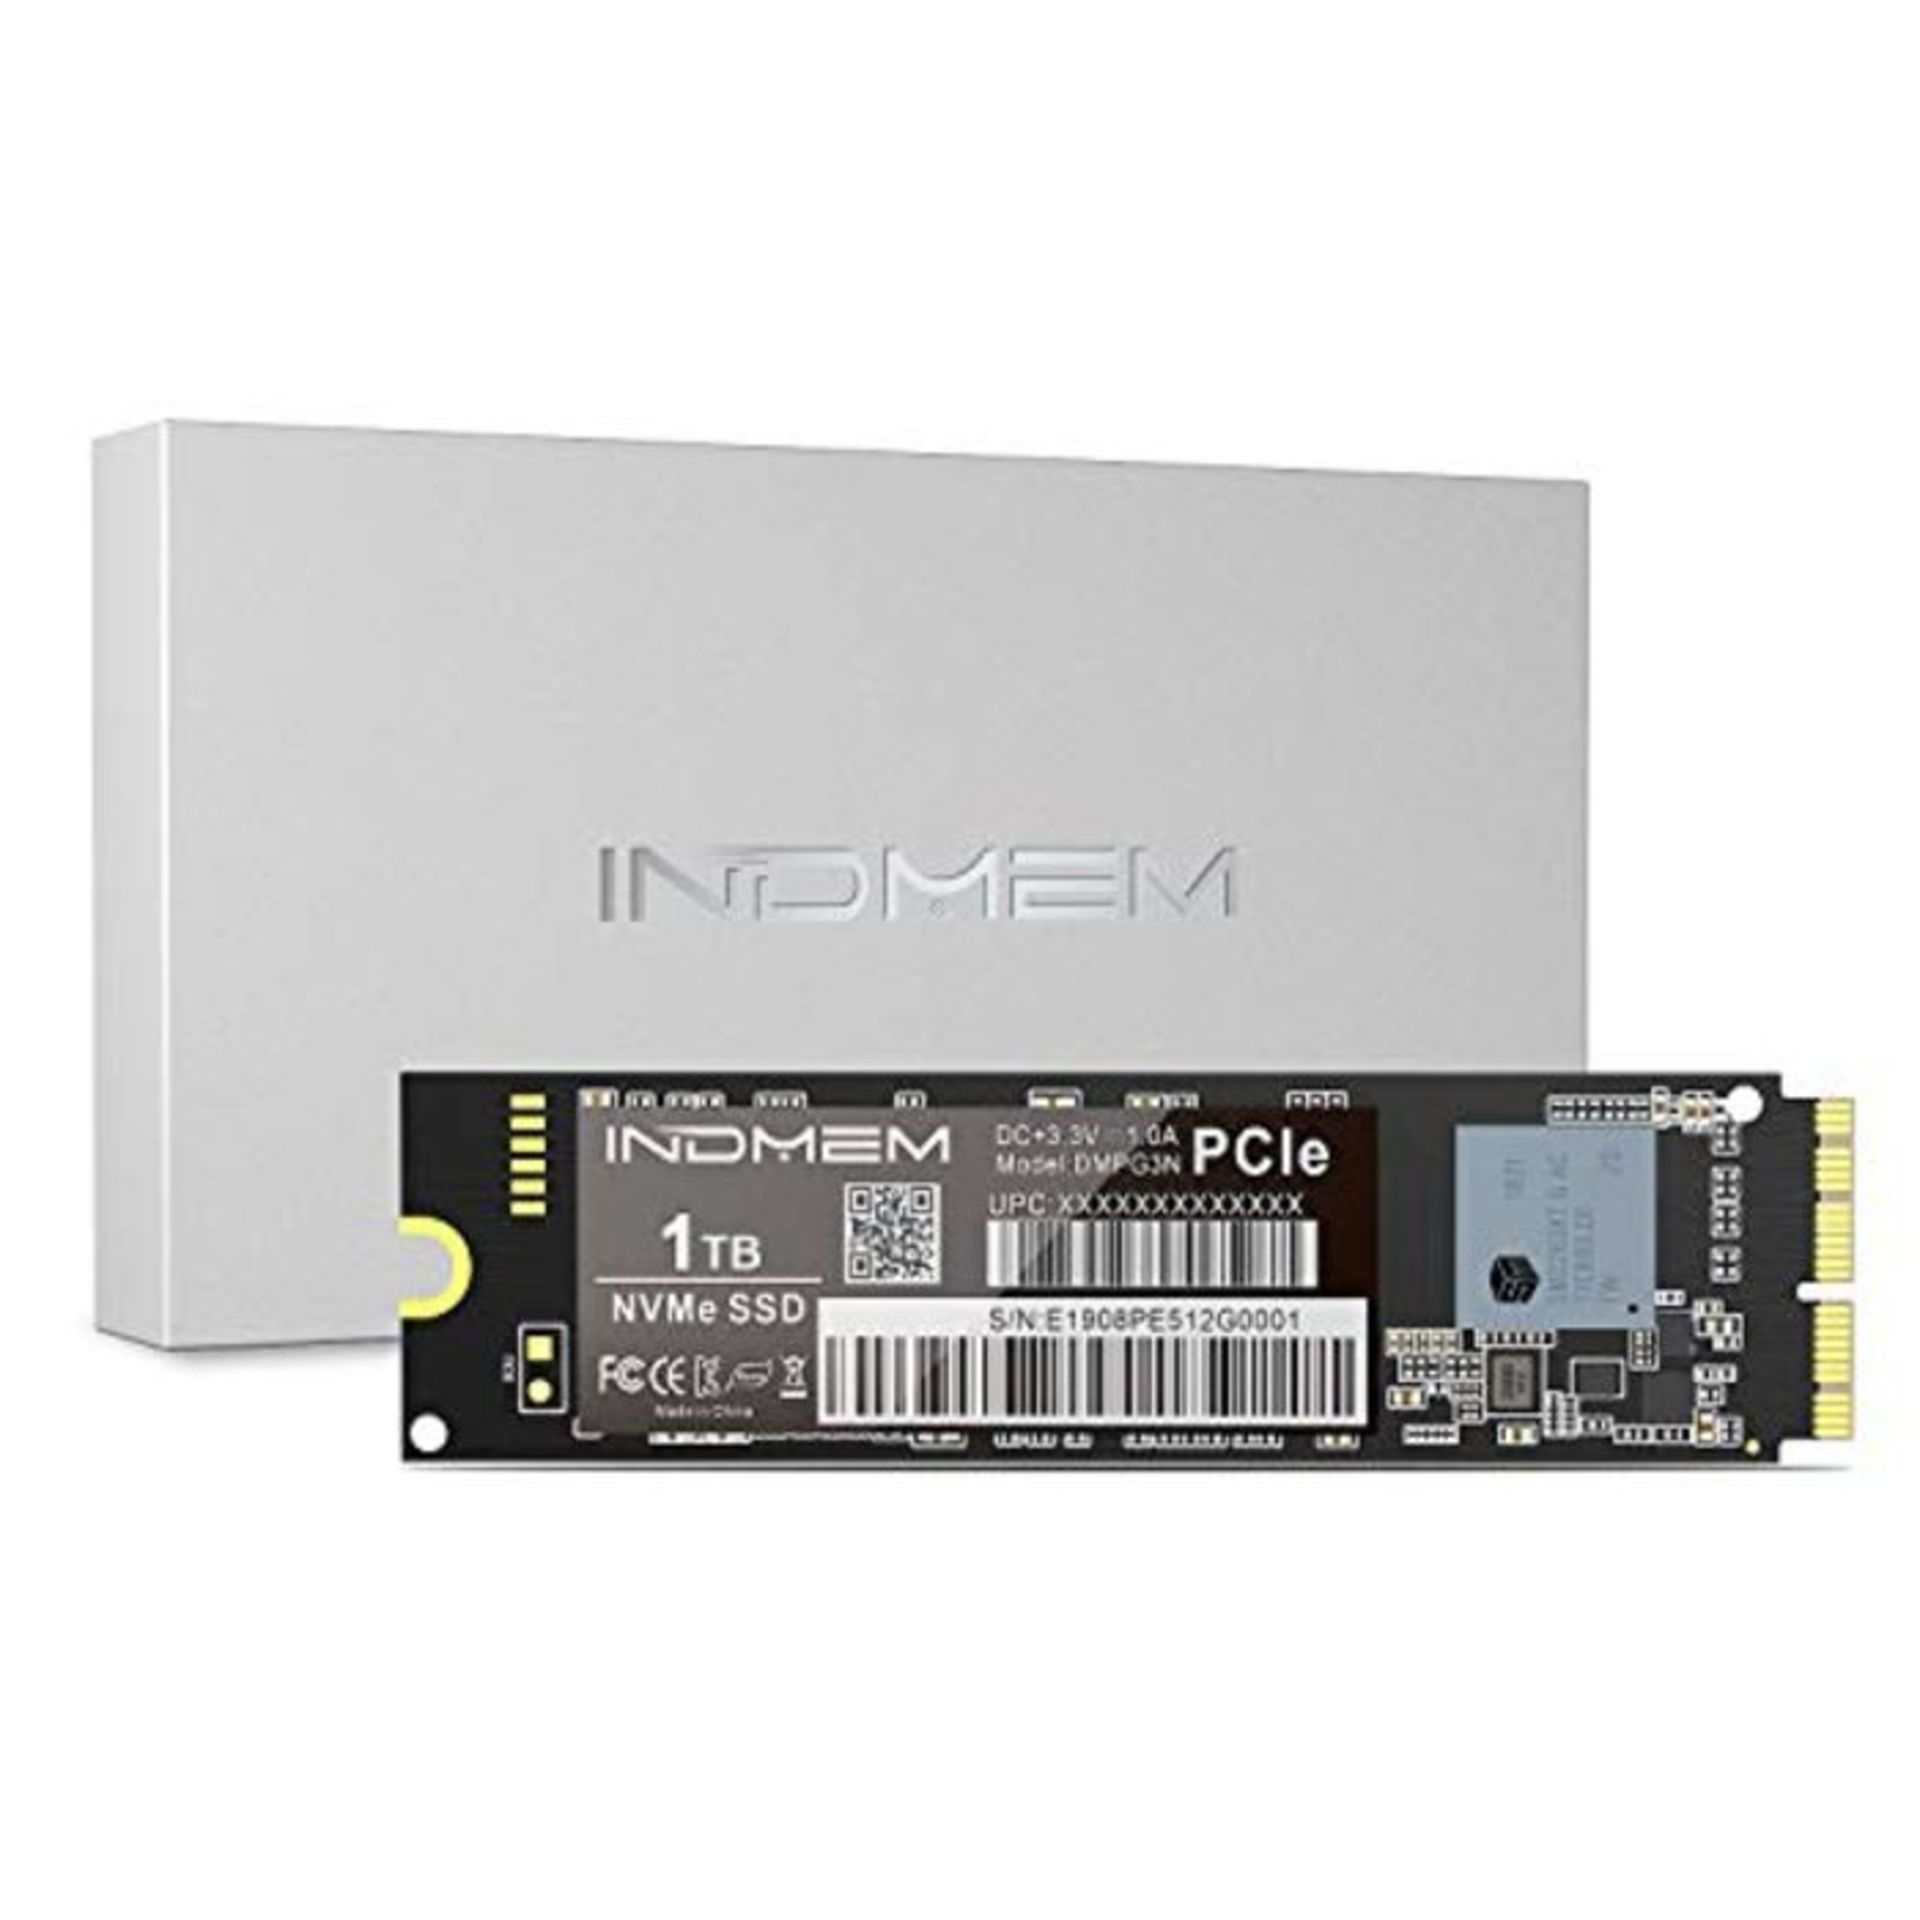 RRP £209.00 I�N�D�M�E�M� �N�V�M�e� �P�C�I�e� �I�n�t�e�r�n�a�l� �S�S�D� �1�T�B� �w�i�t�h� �S�c�r�e�w�